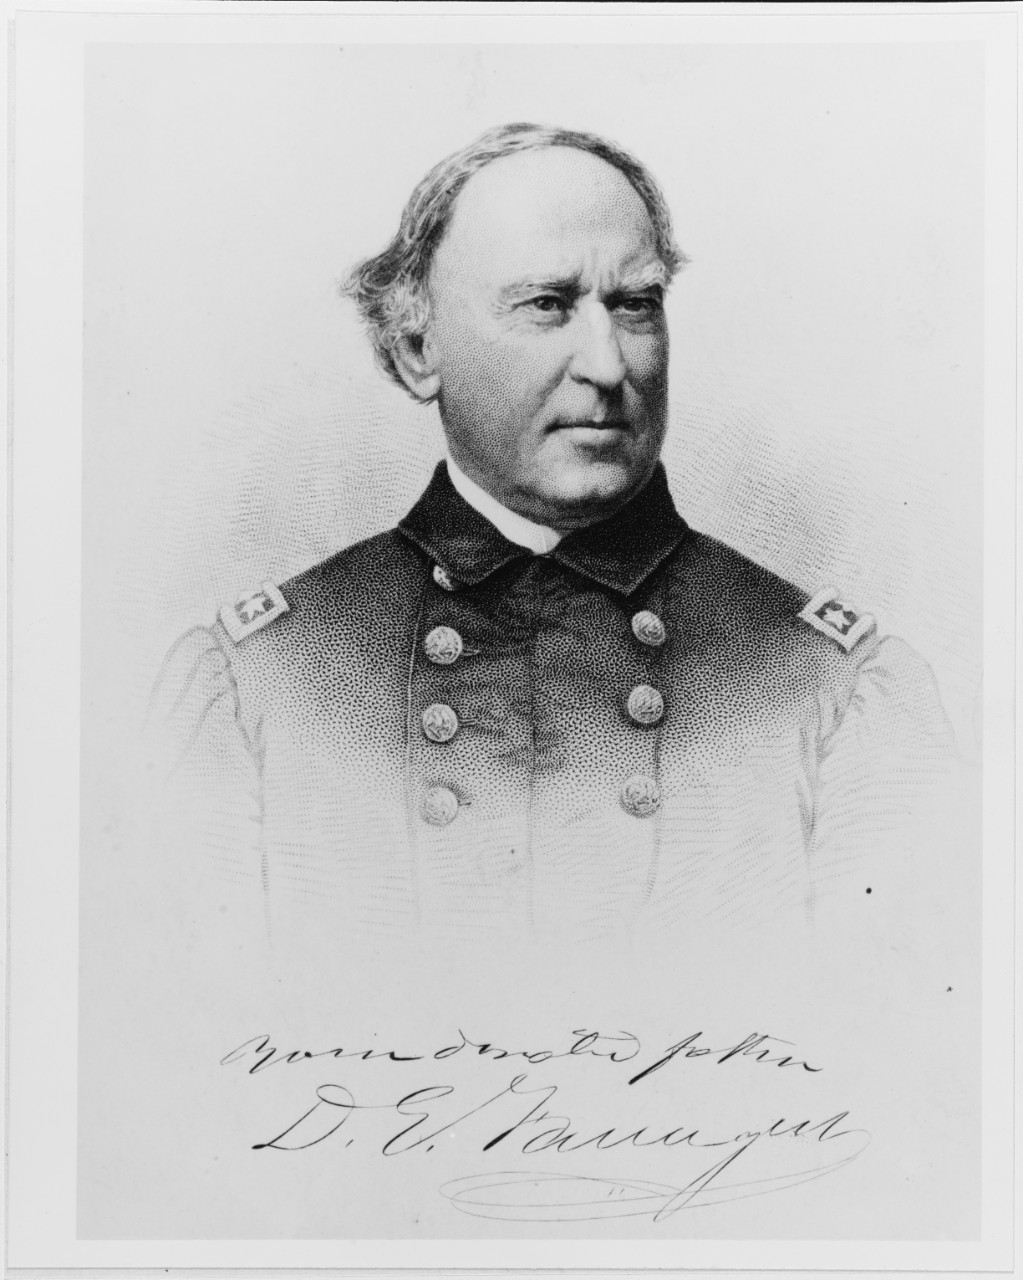 Vice Admiral David G. Farragut, USN